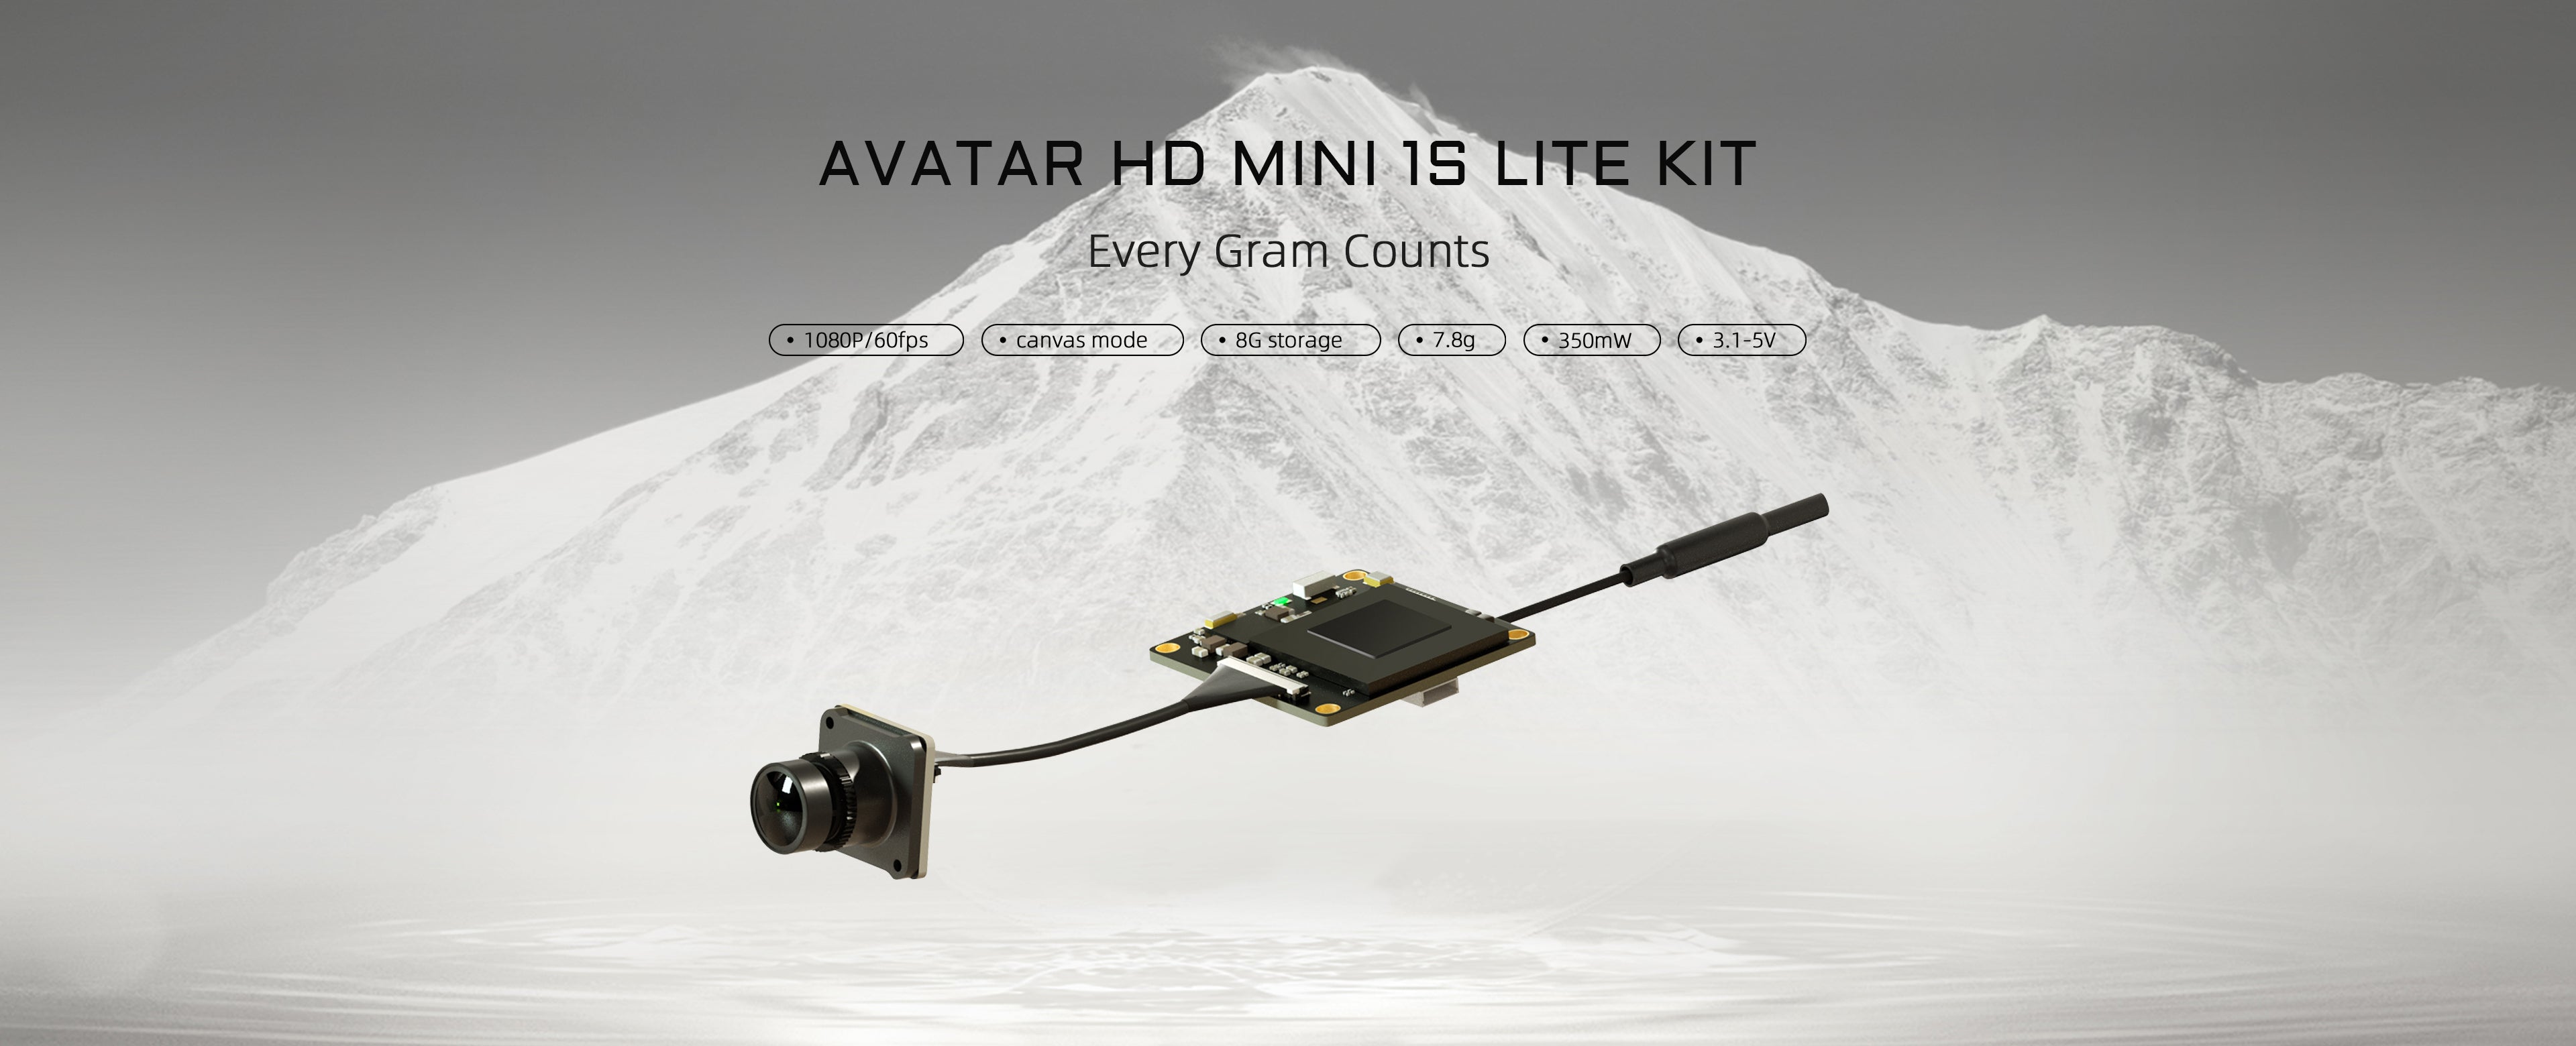 Walksnail Avatar HD Mini 1s Lite Kit, AVATAR HD MINI 15 LITE KIT Every Gram Counts 108OP/